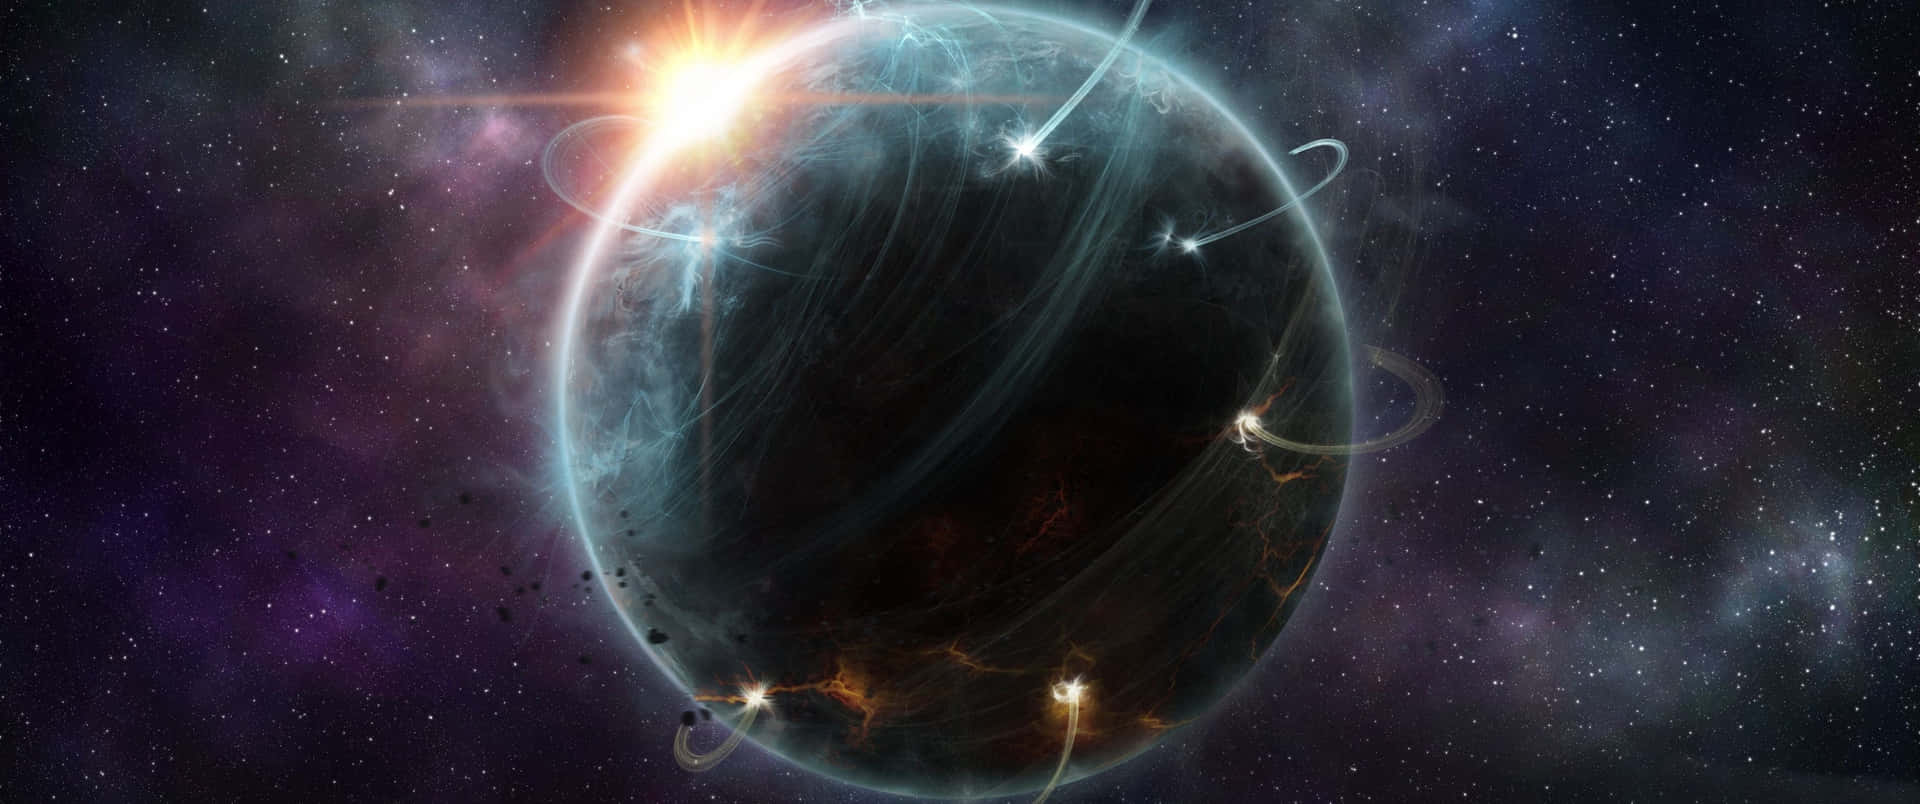 4k Universe Planet Of Kehn`wa Wallpaper